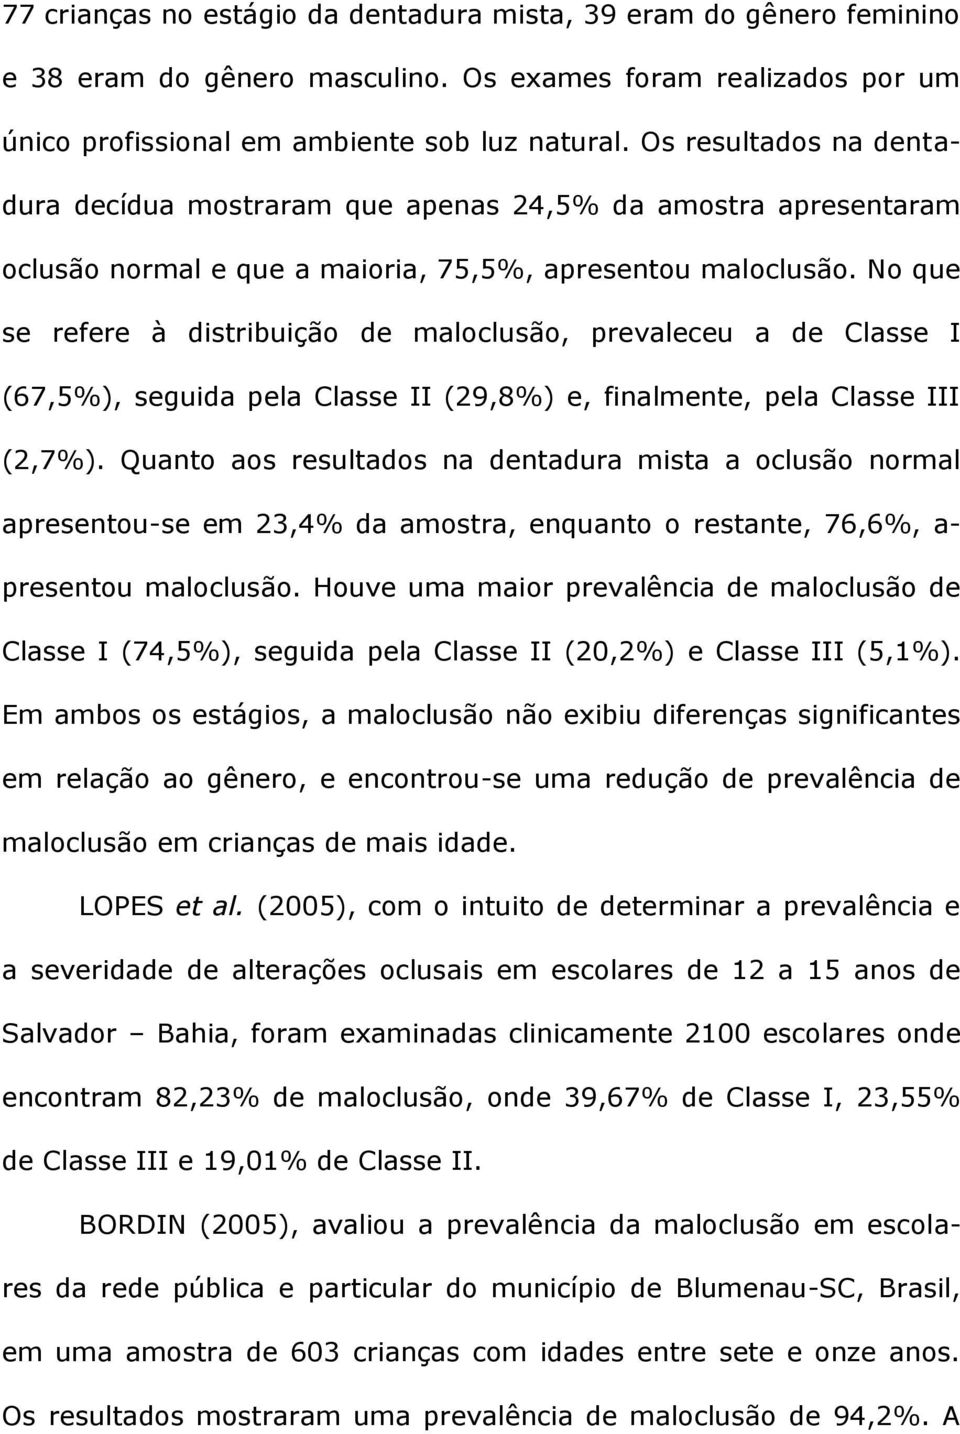 No que se refere à distribuição de maloclusão, prevaleceu a de Classe I (67,5%), seguida pela Classe II (29,8%) e, finalmente, pela Classe III (2,7%).